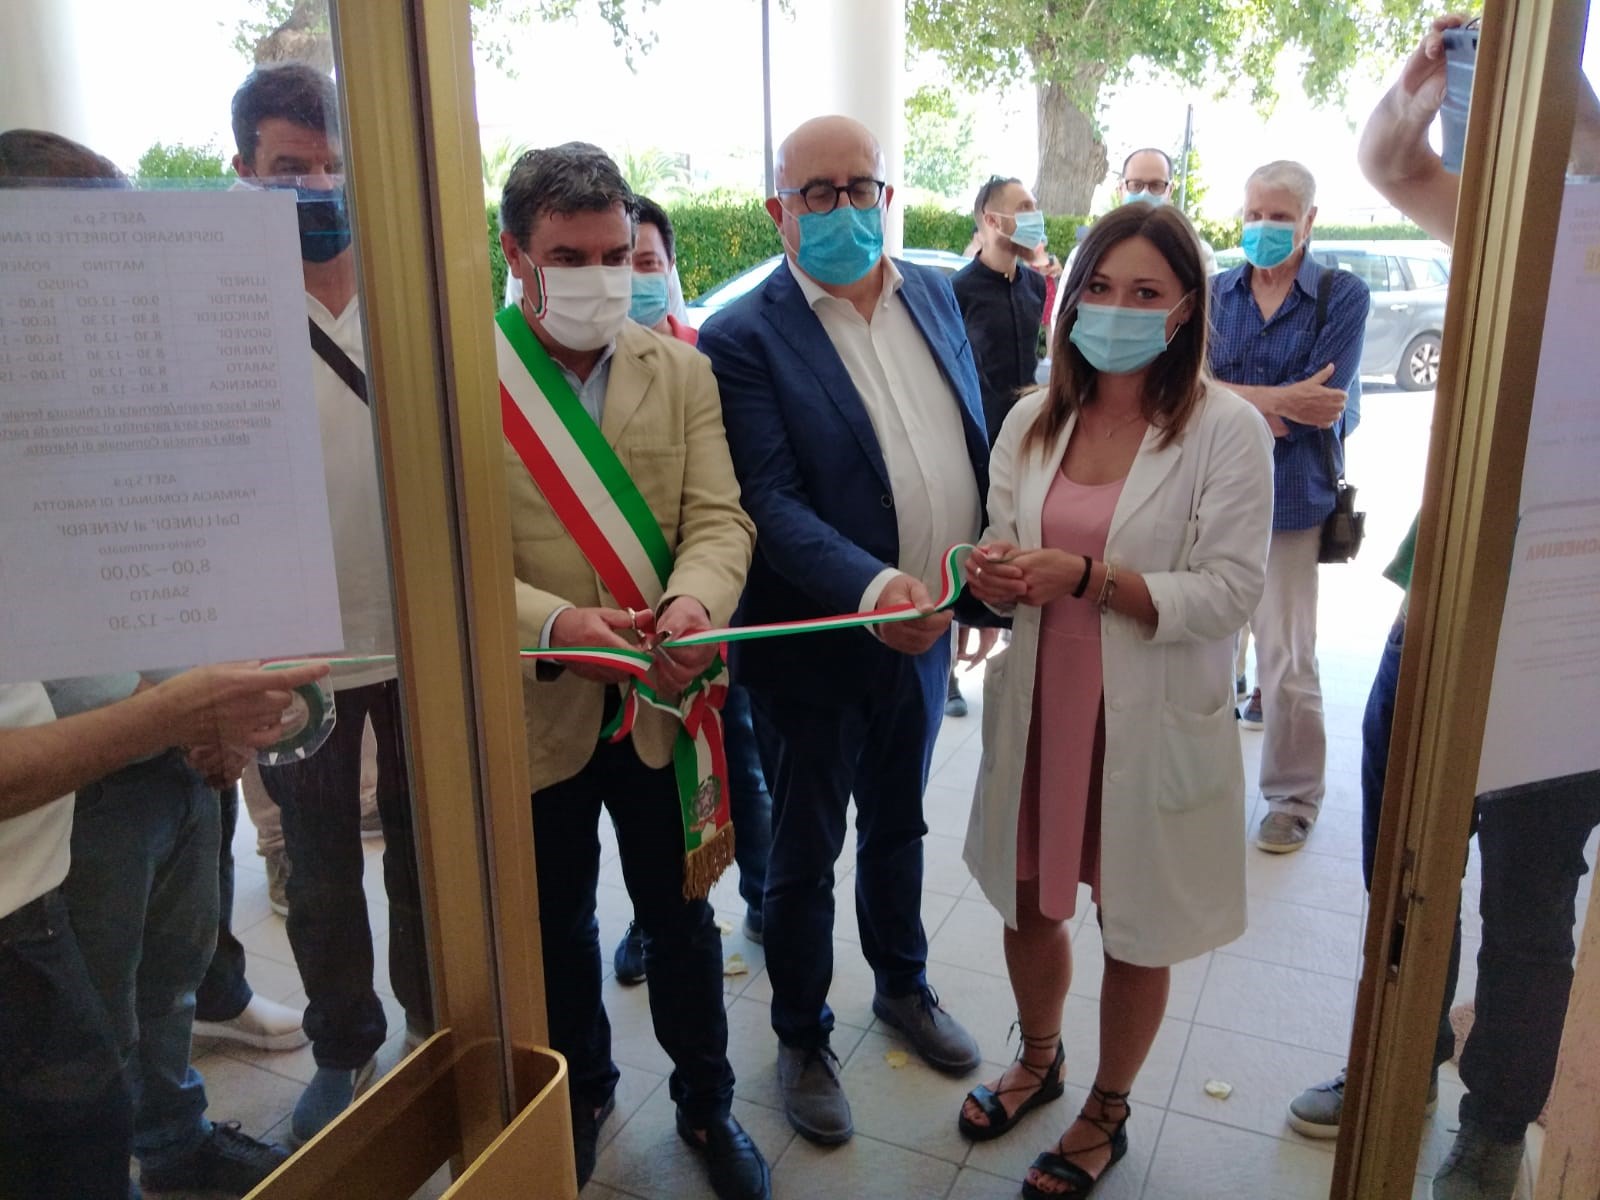 Aset spa, inaugurato a Torrette  il nuovo dispensario stagionale  Al taglio del nastro sindaco Seri e presidente Reginelli   